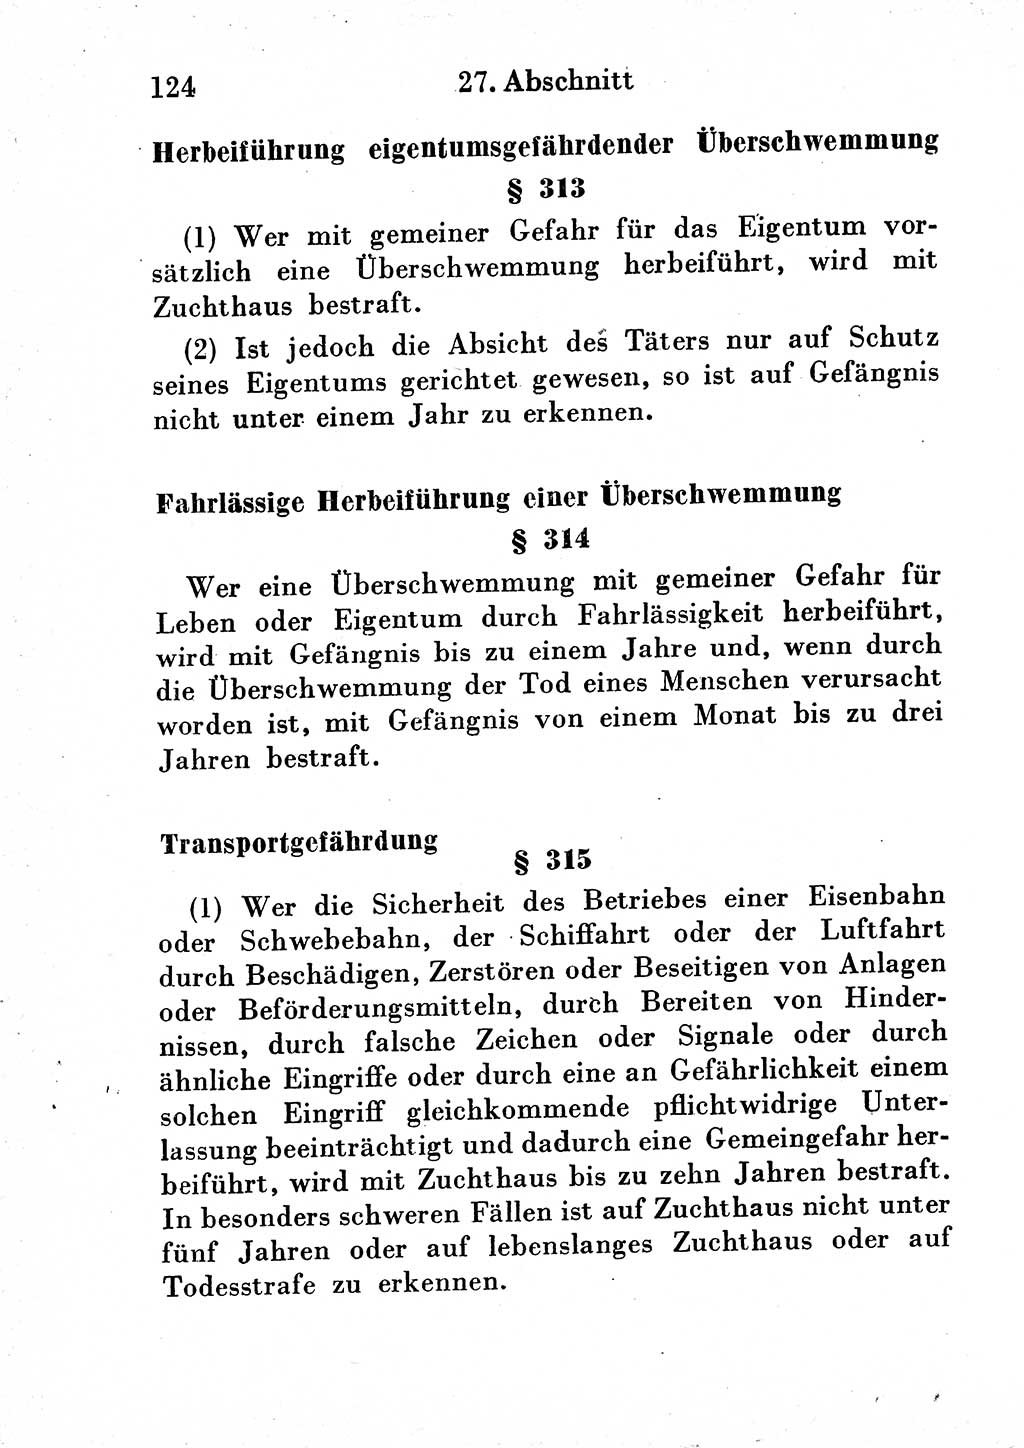 Strafgesetzbuch (StGB) und andere Strafgesetze [Deutsche Demokratische Republik (DDR)] 1954, Seite 124 (StGB Strafges. DDR 1954, S. 124)